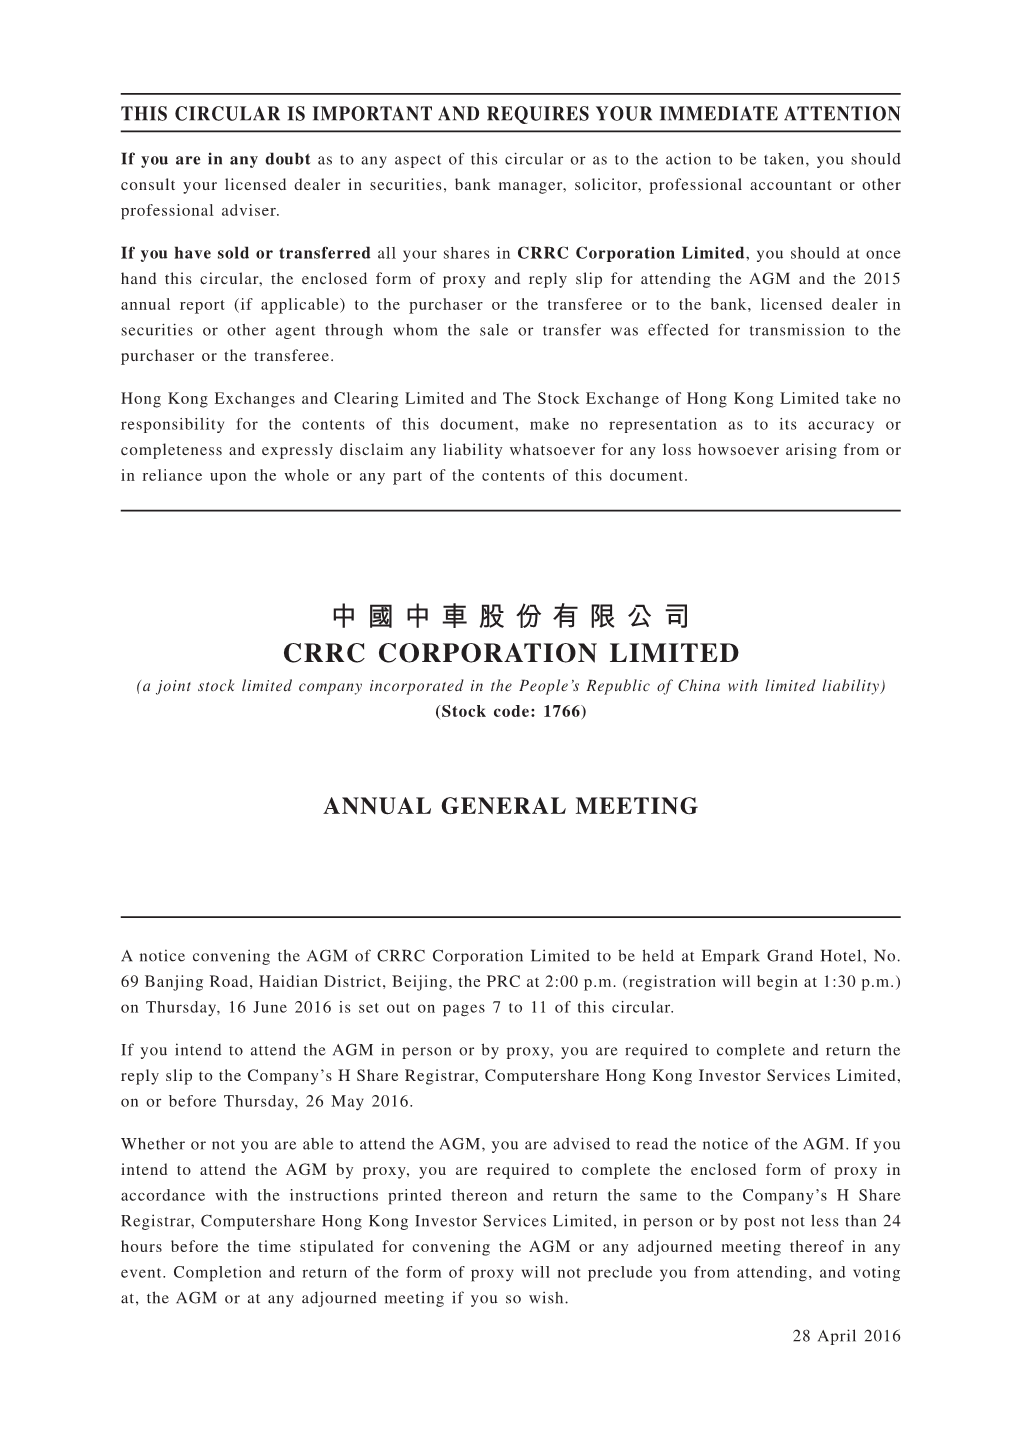 中國中車股份有限公司 CRRC CORPORATION LIMITED (A Joint Stock Limited Company Incorporated in the People’S Republic of China with Limited Liability) (Stock Code: 1766)